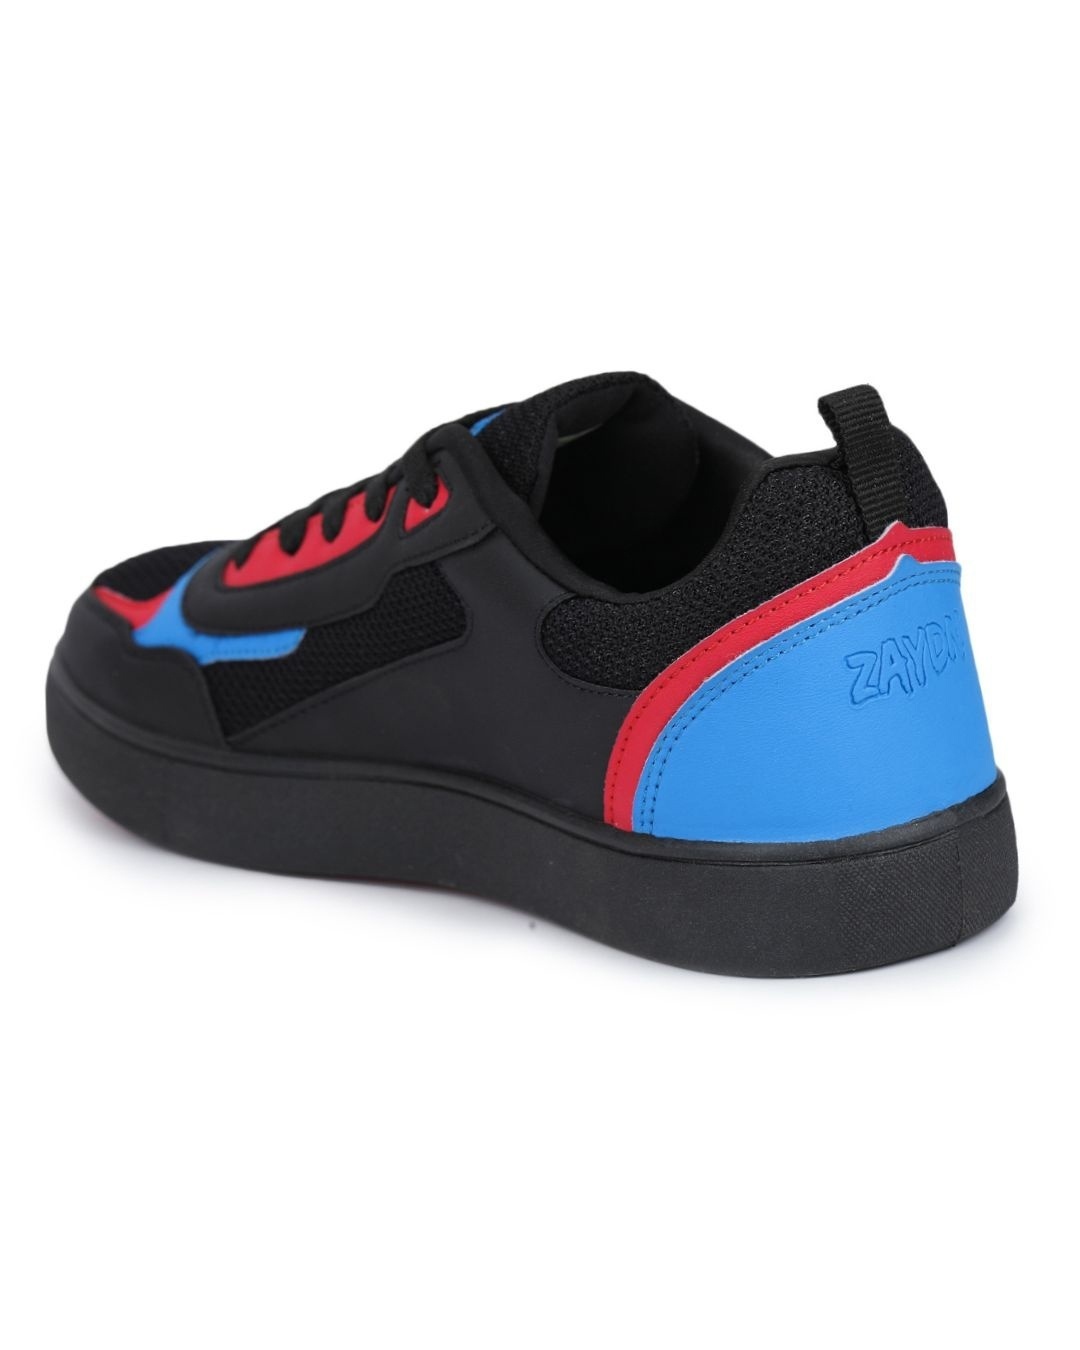 Men S Black Color Block Casual Shoes 539588 1664363041 3 